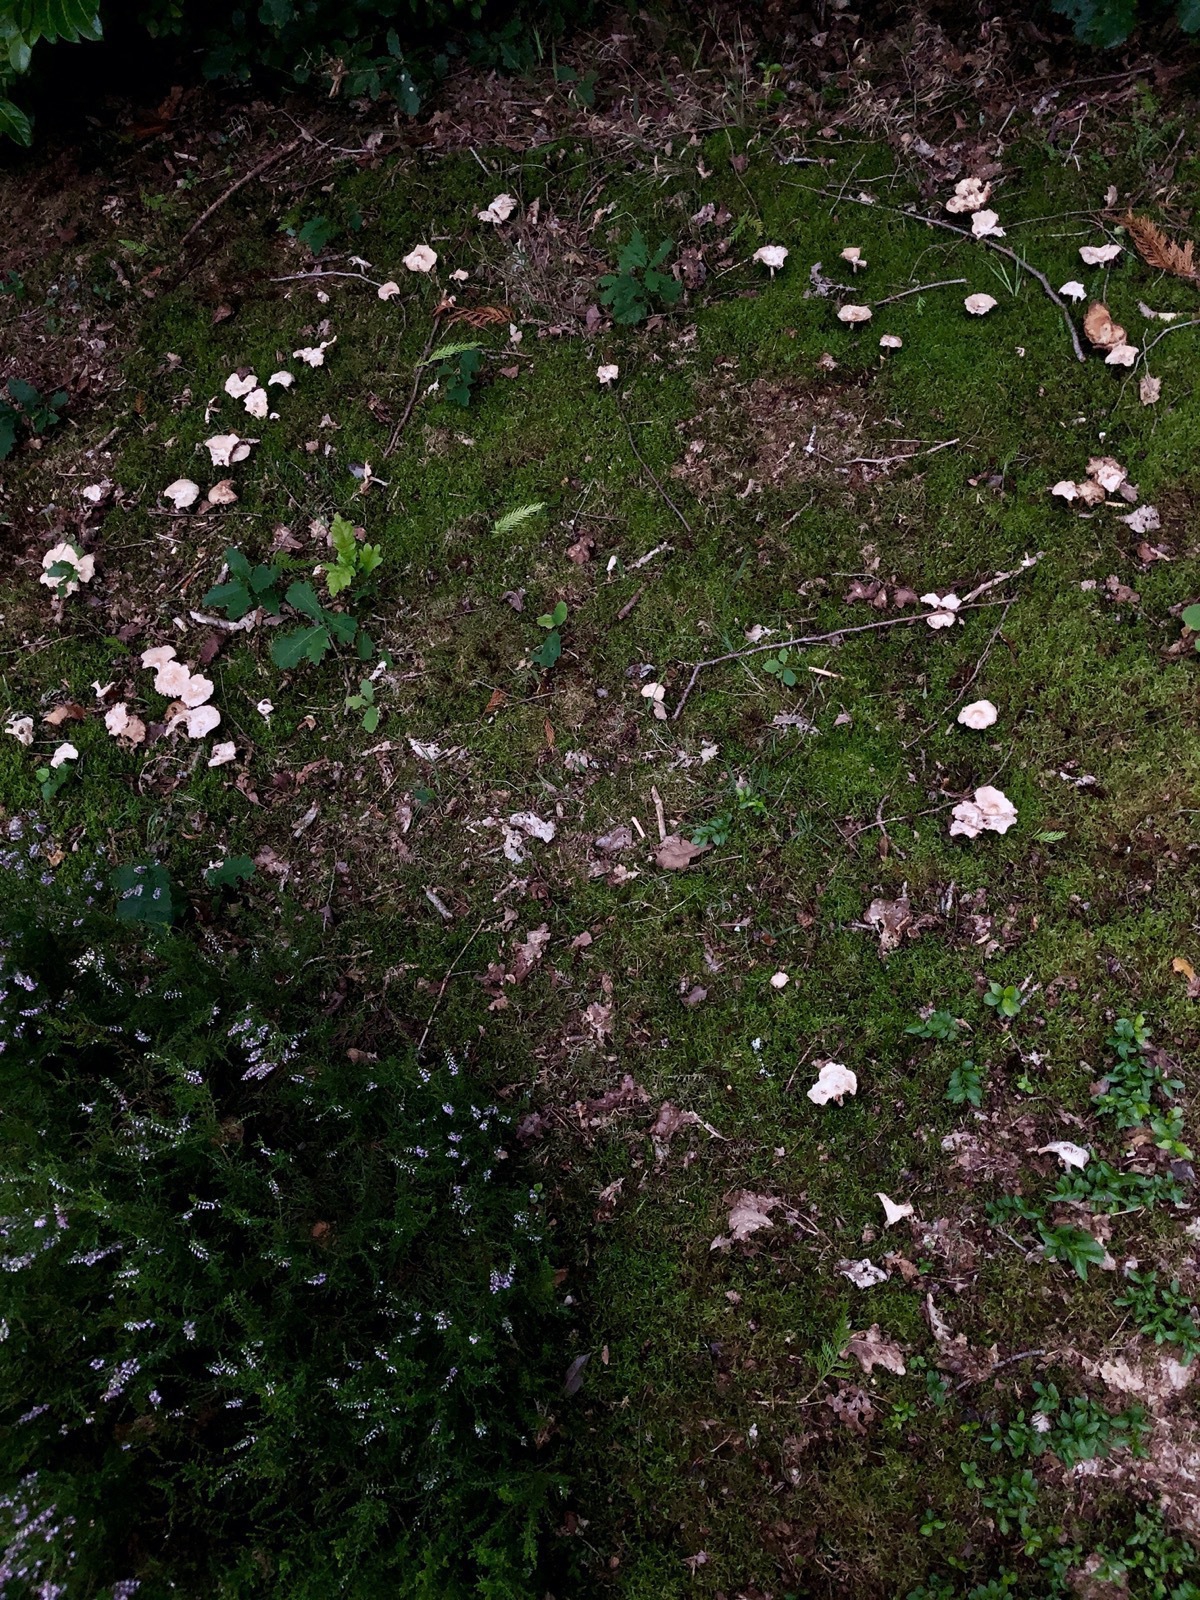 Ring of mushrooms